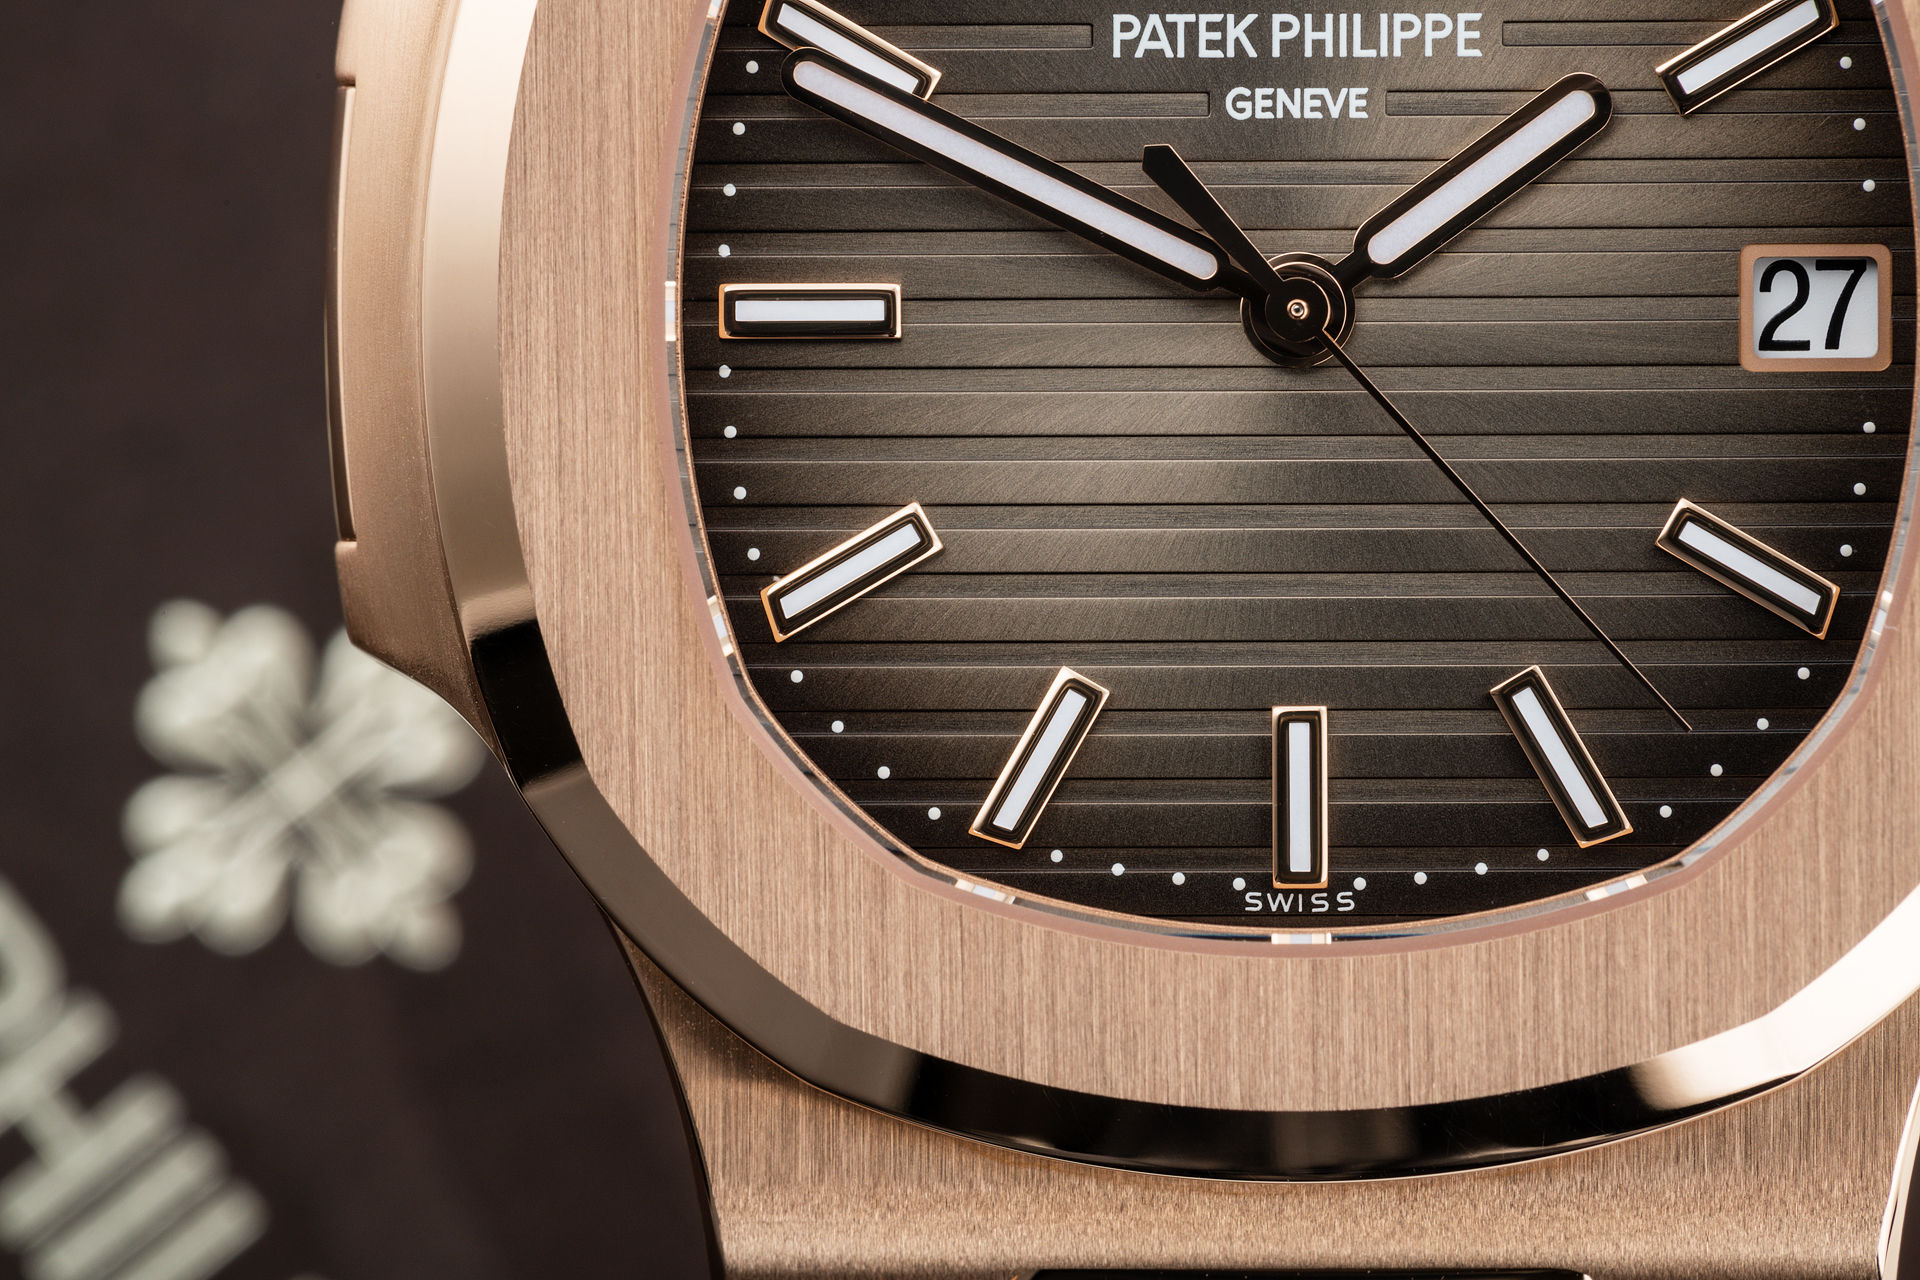 ref 5711/1R-001 | Brand New Rose Gold  | Patek Philippe Nautilus